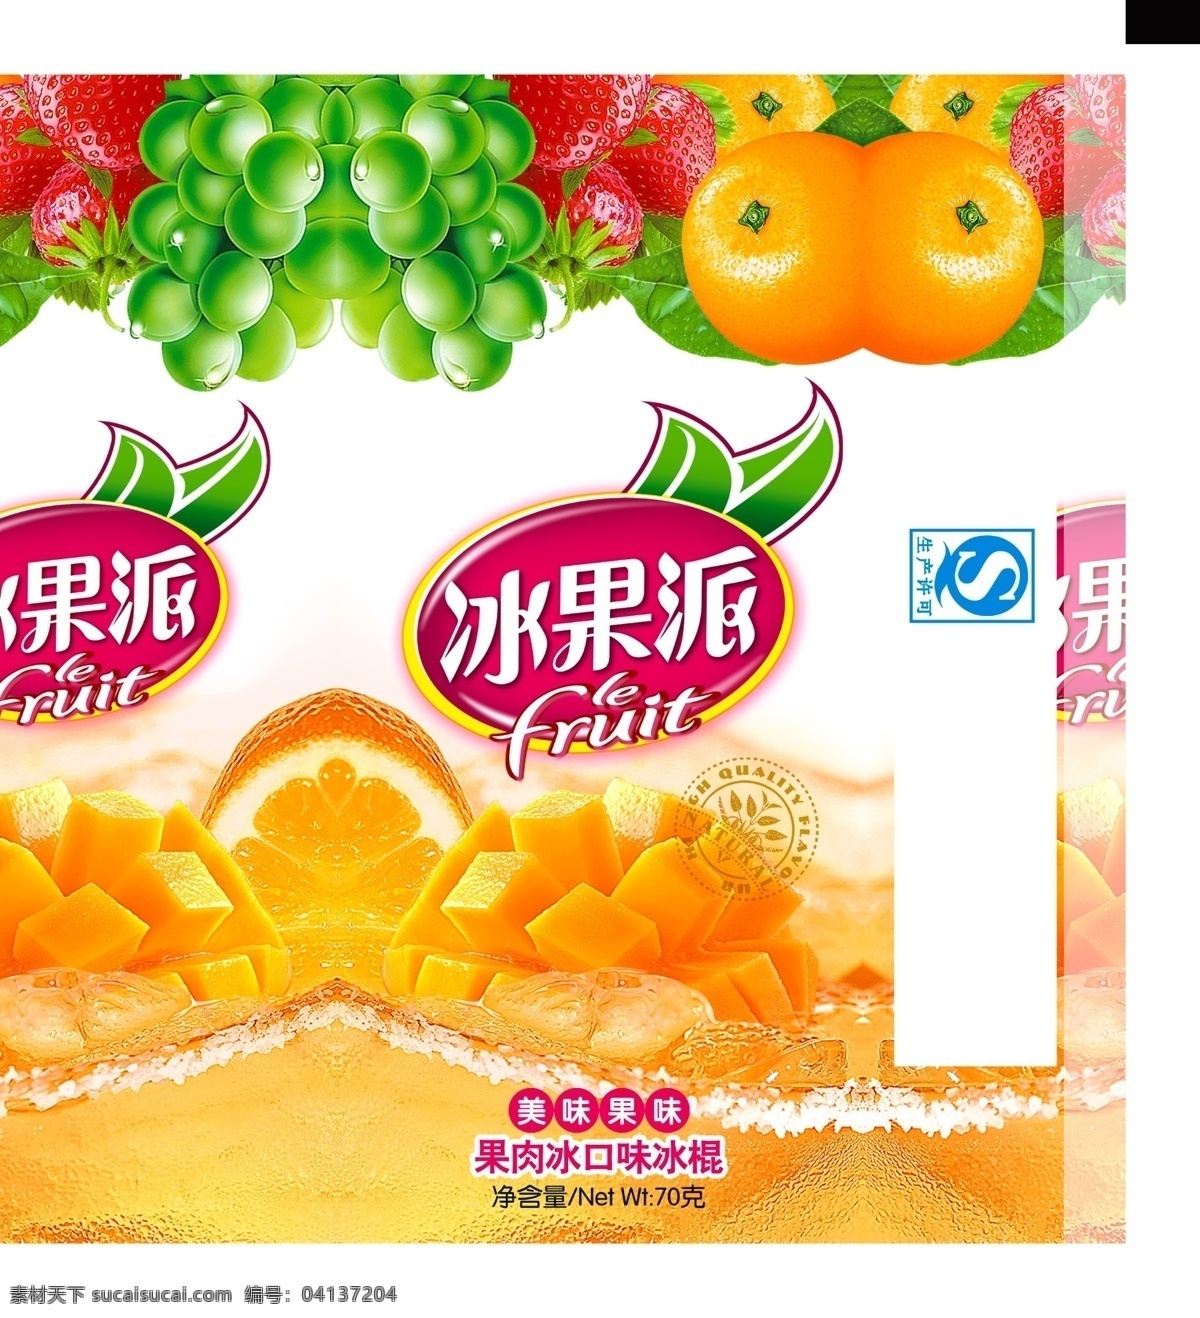 冰果 派 水果 饮品 宣传海报 冰果派 果汁 橙子 饮料 饮品店 饮品店招 新鲜水果 葡萄 共享图 分层